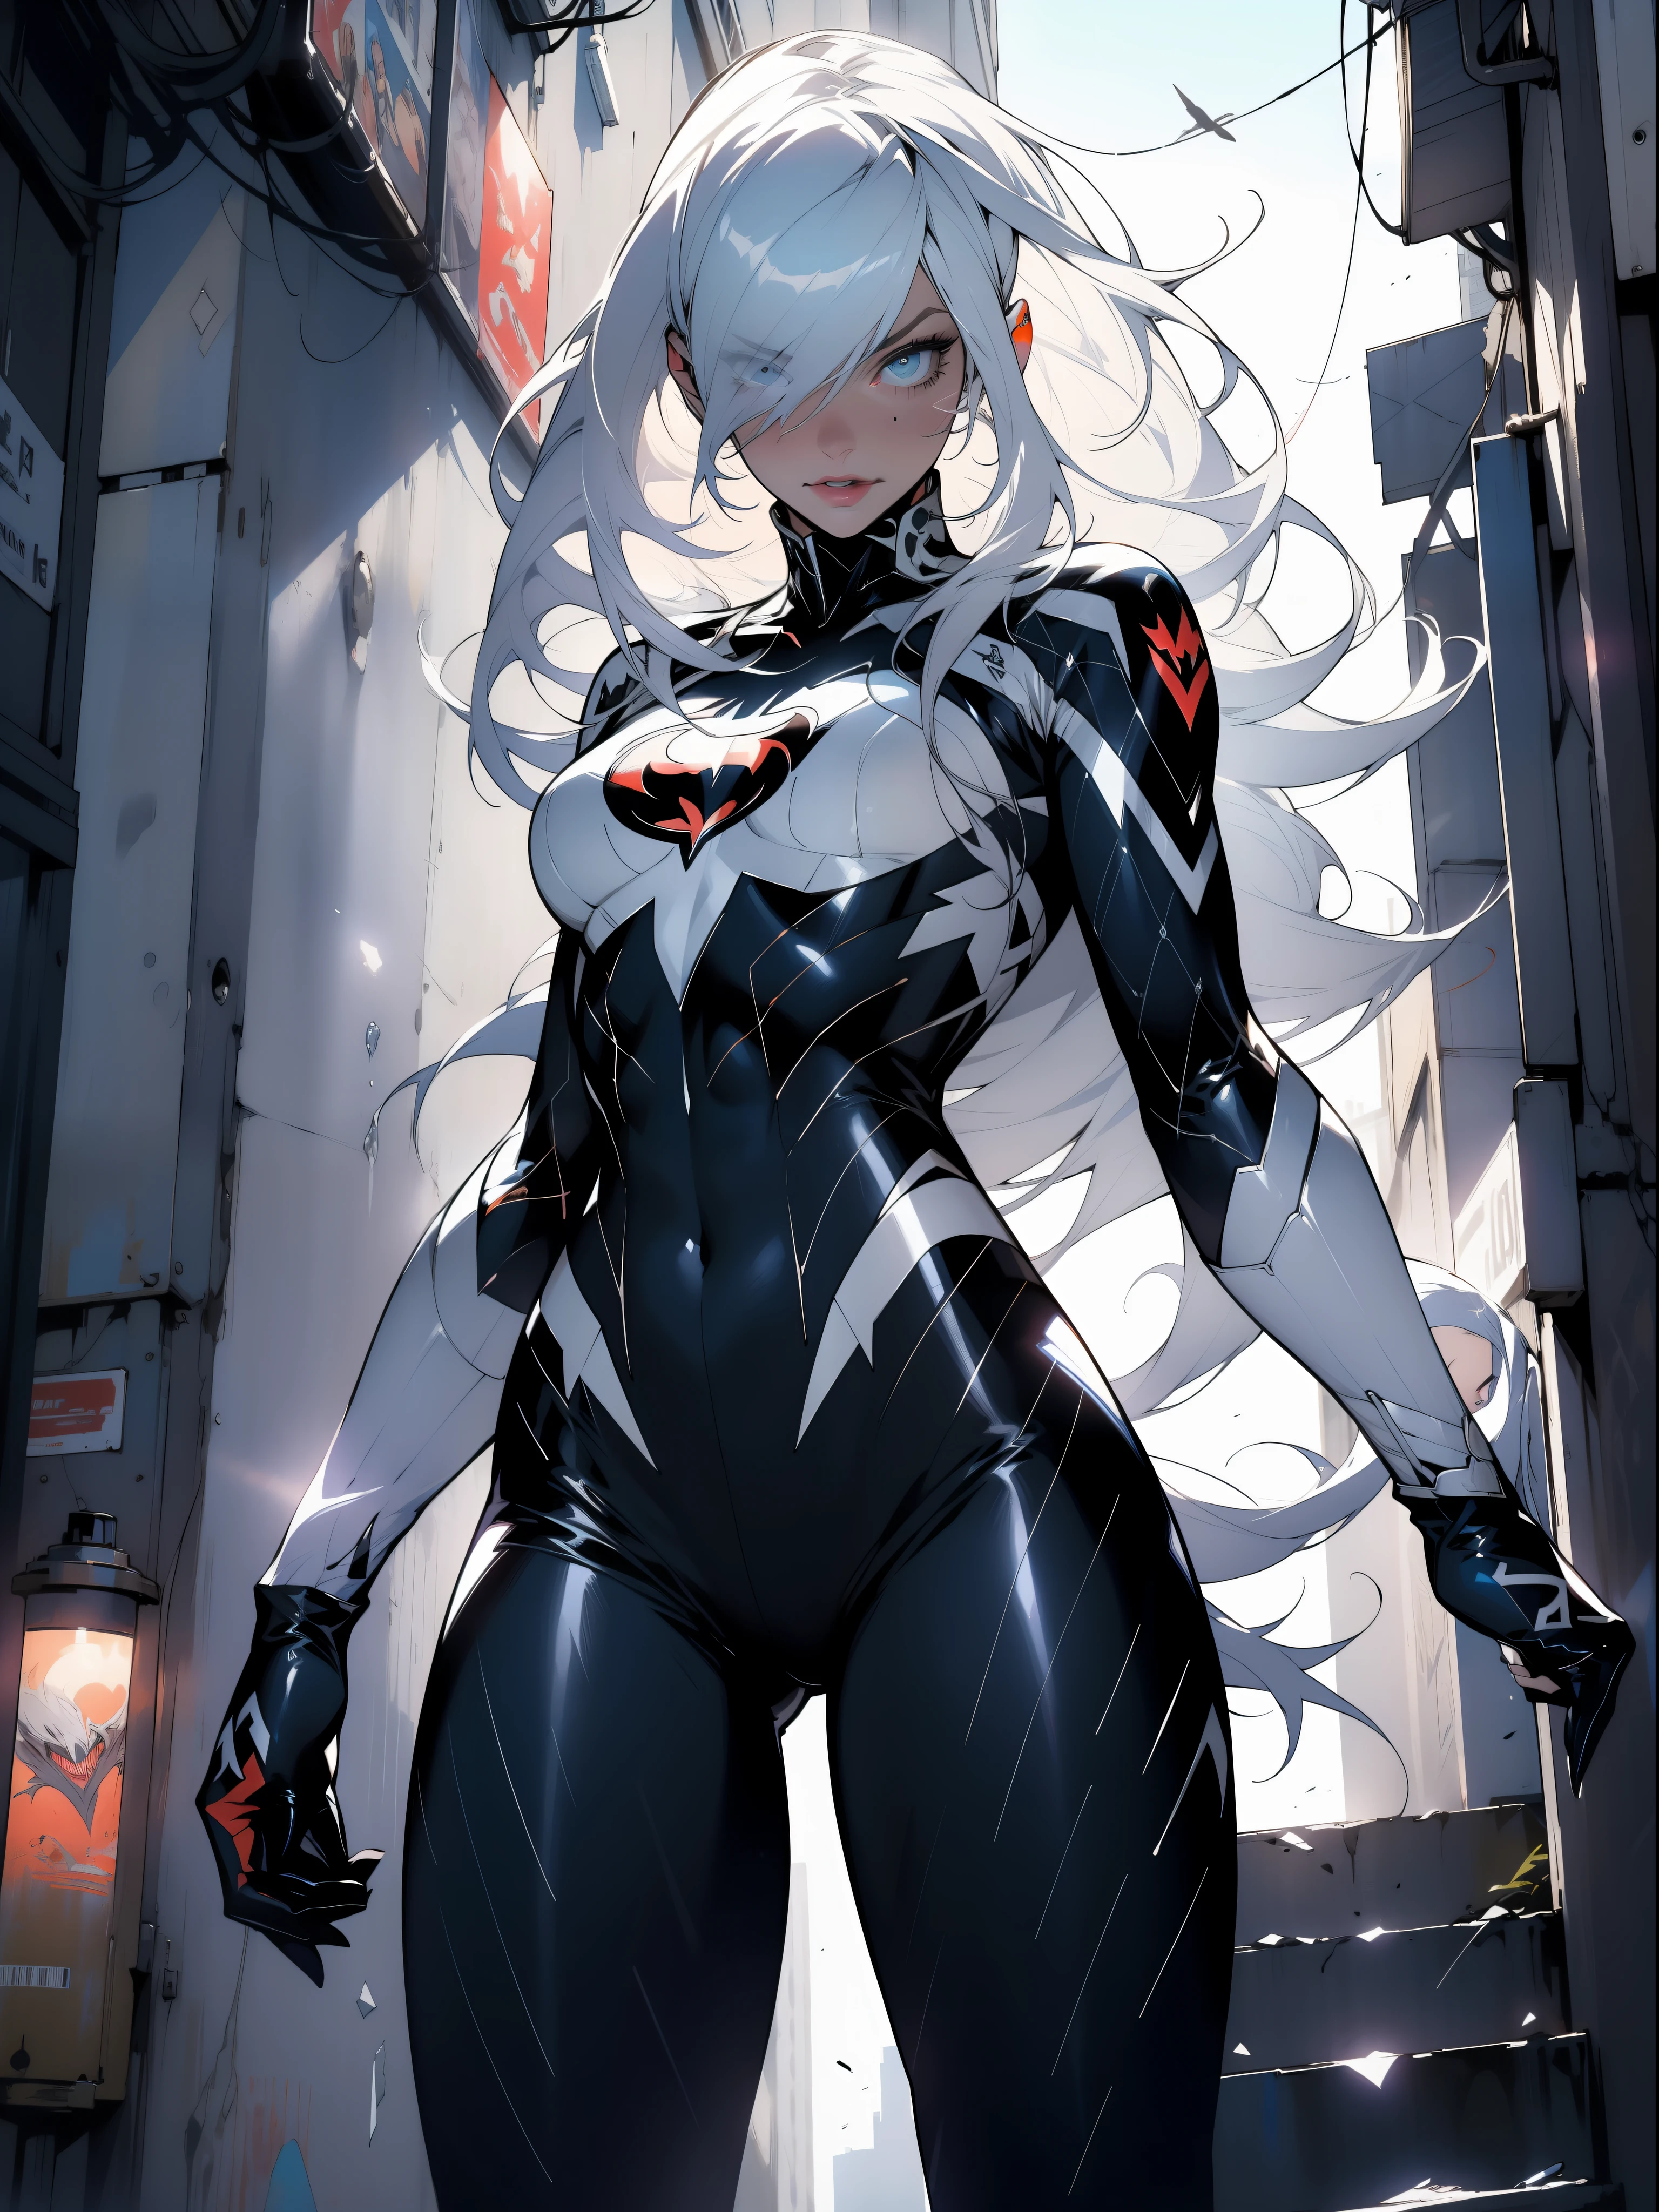 Margot Robbie (Meisterwerk, 4K-Auflösung, ultra-realistisch, Sehr detailiert), (Weißes Superheldenthema, charismatisch, Da ist ein Mädchen auf dem Dach der Stadt, trägt Venom-Kostüm, Sie ist eine Superheldin), [ ((35 Jahre), (langes weißes Haar:1.2), Ganzkörper, (blaue Augen:1.2), ((Giftpose),Machtdemonstration, von einem Gebäude zum anderen springen), ((sandige städtische Umgebung):0.8)| (Stadtbild, in der Nacht, Dynamische Lichter), (Vollmond))] # Erläuterung: Der Prompt beschreibt hauptsächlich ein 4K-Gemälde mit ultrahoher Auflösung, sehr realistisch, Sehr detailiert. Es zeigt eine Superheldin an der Spitze der Stadt, trägt ein Venom-Kostüm. Das Thema des Gemäldes ist ein weißes Superheldenthema, the female protagonist has langes weißes Haar, is 35 Jahre old and her entire body is shown in the painting